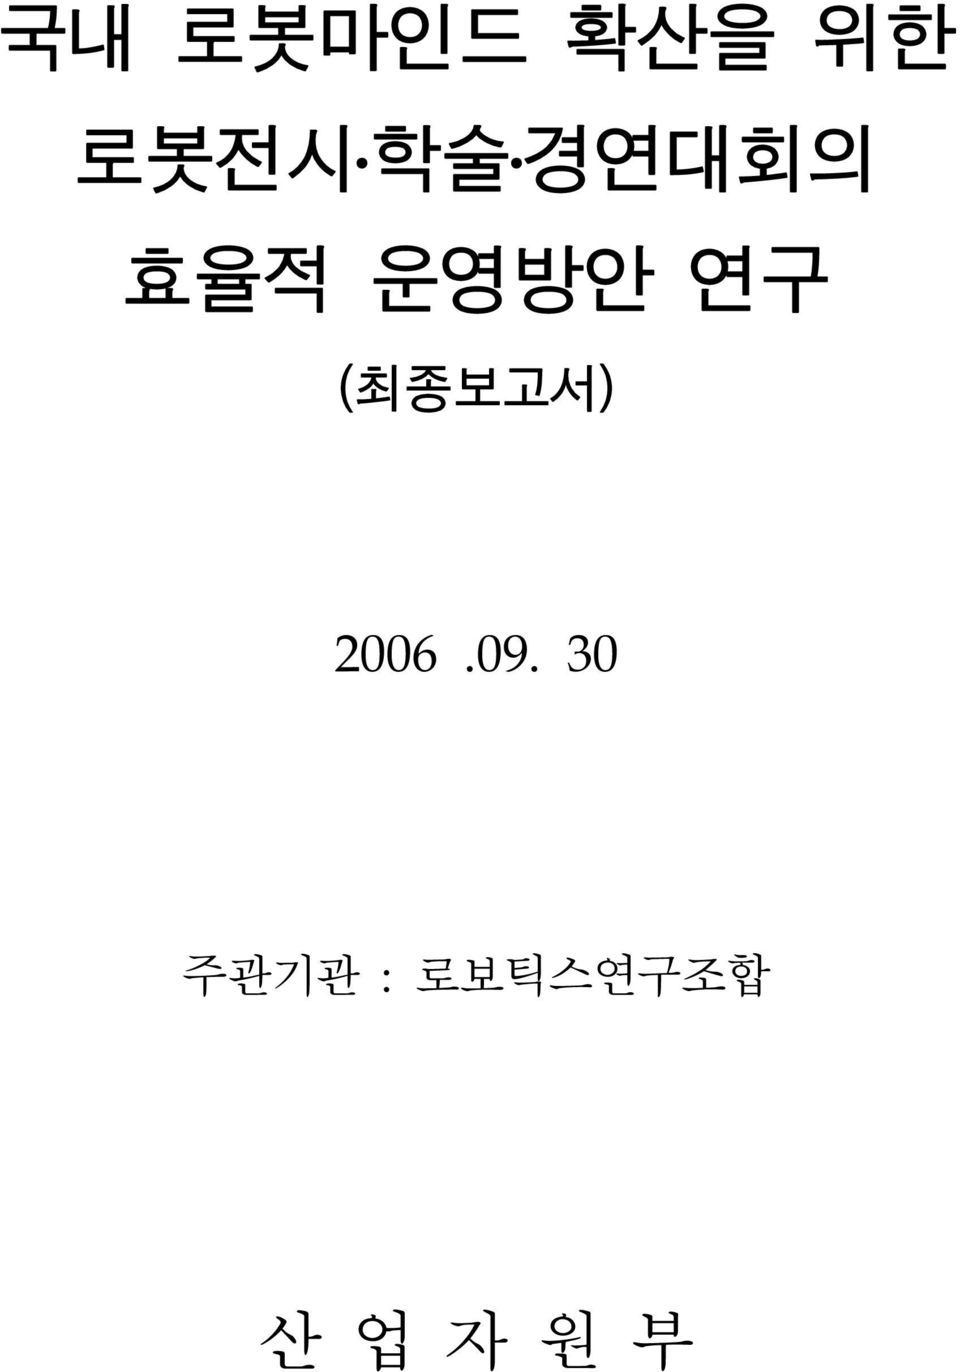 (최종보고서) 2006.09.